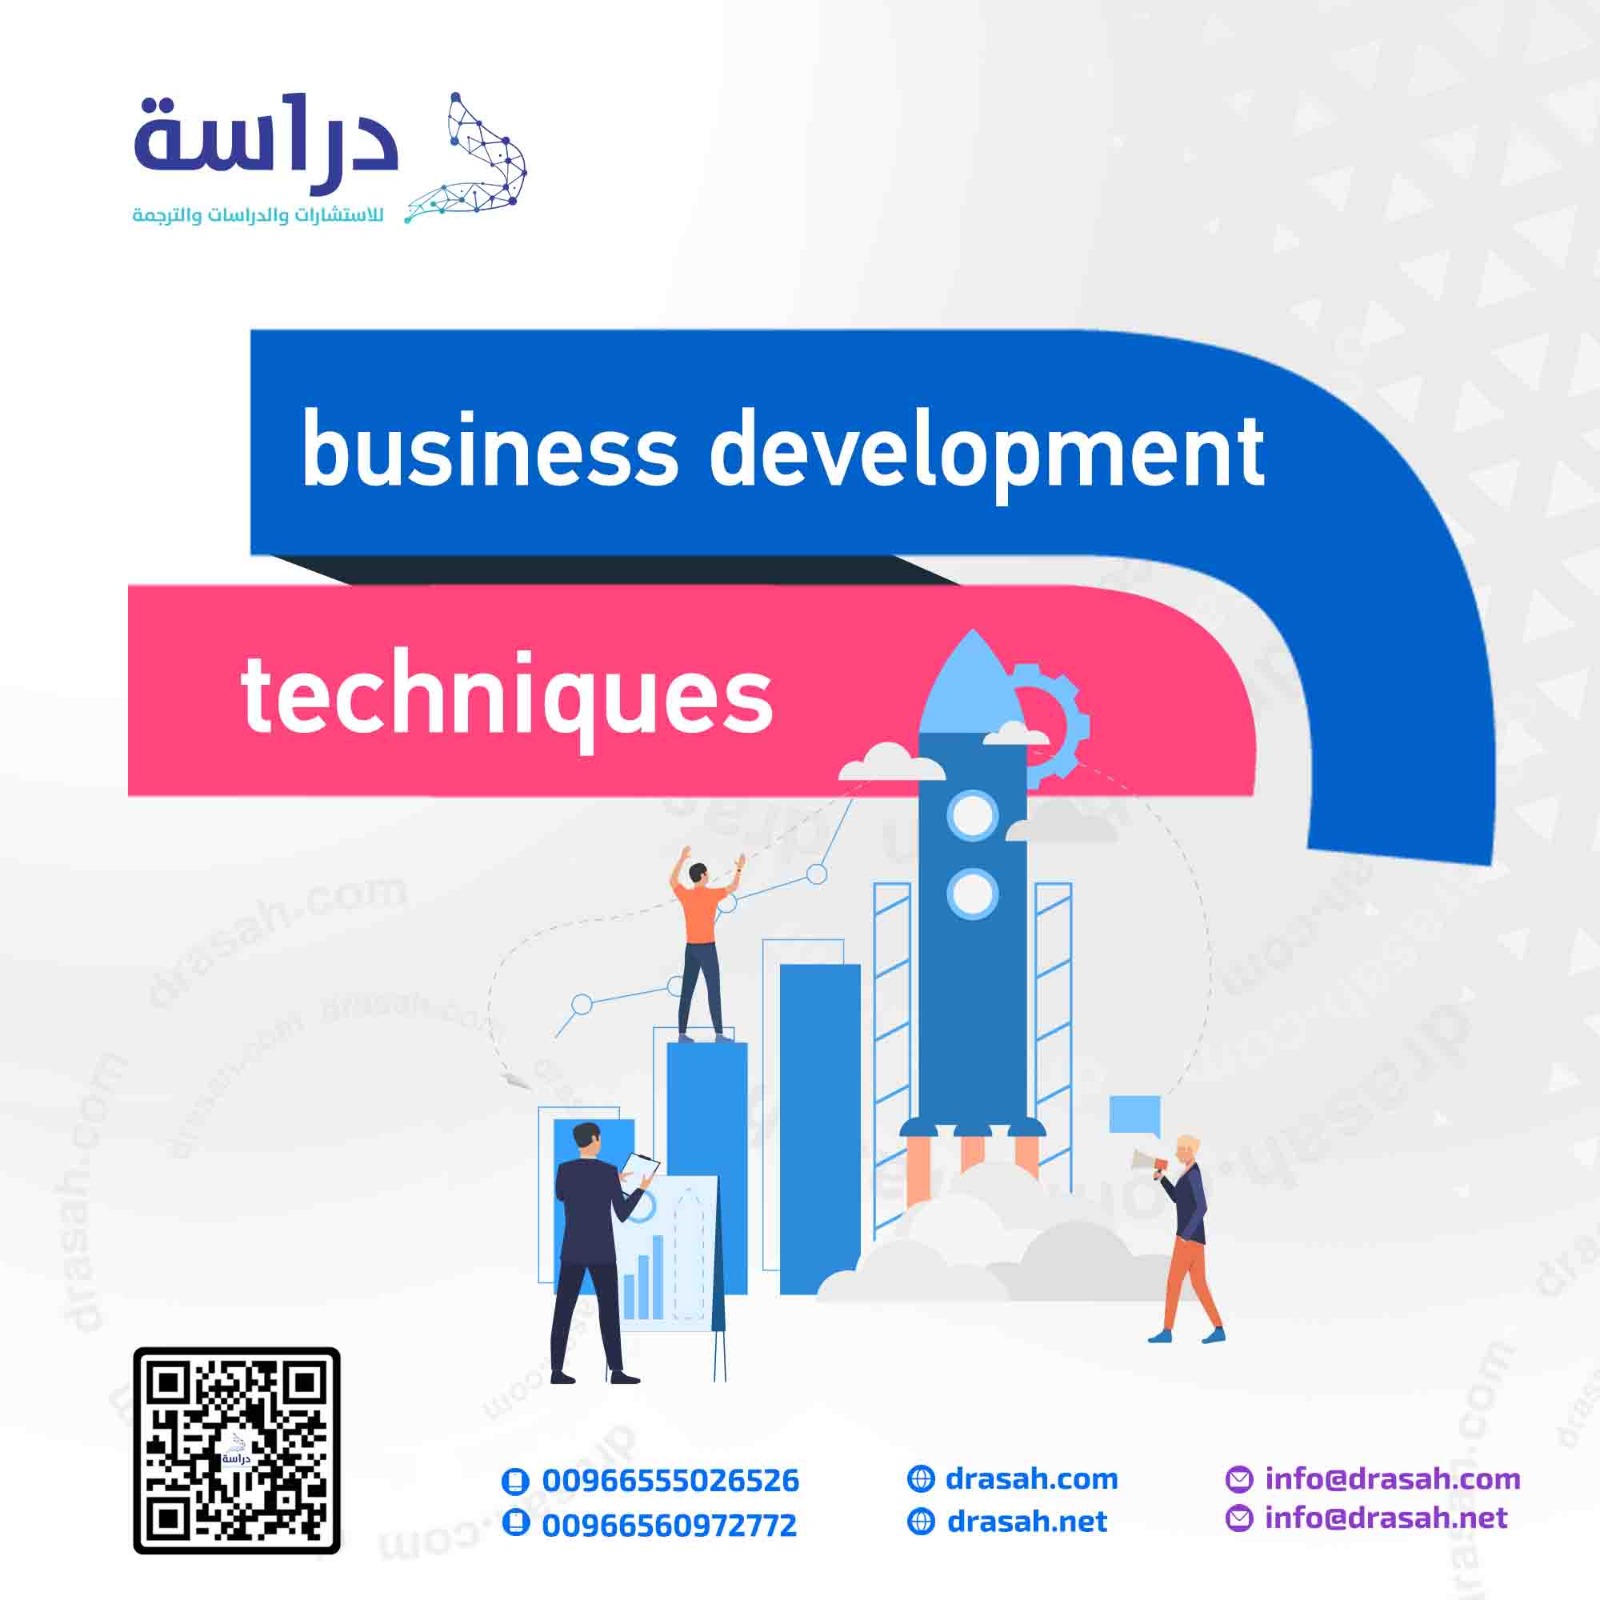 business development techniques